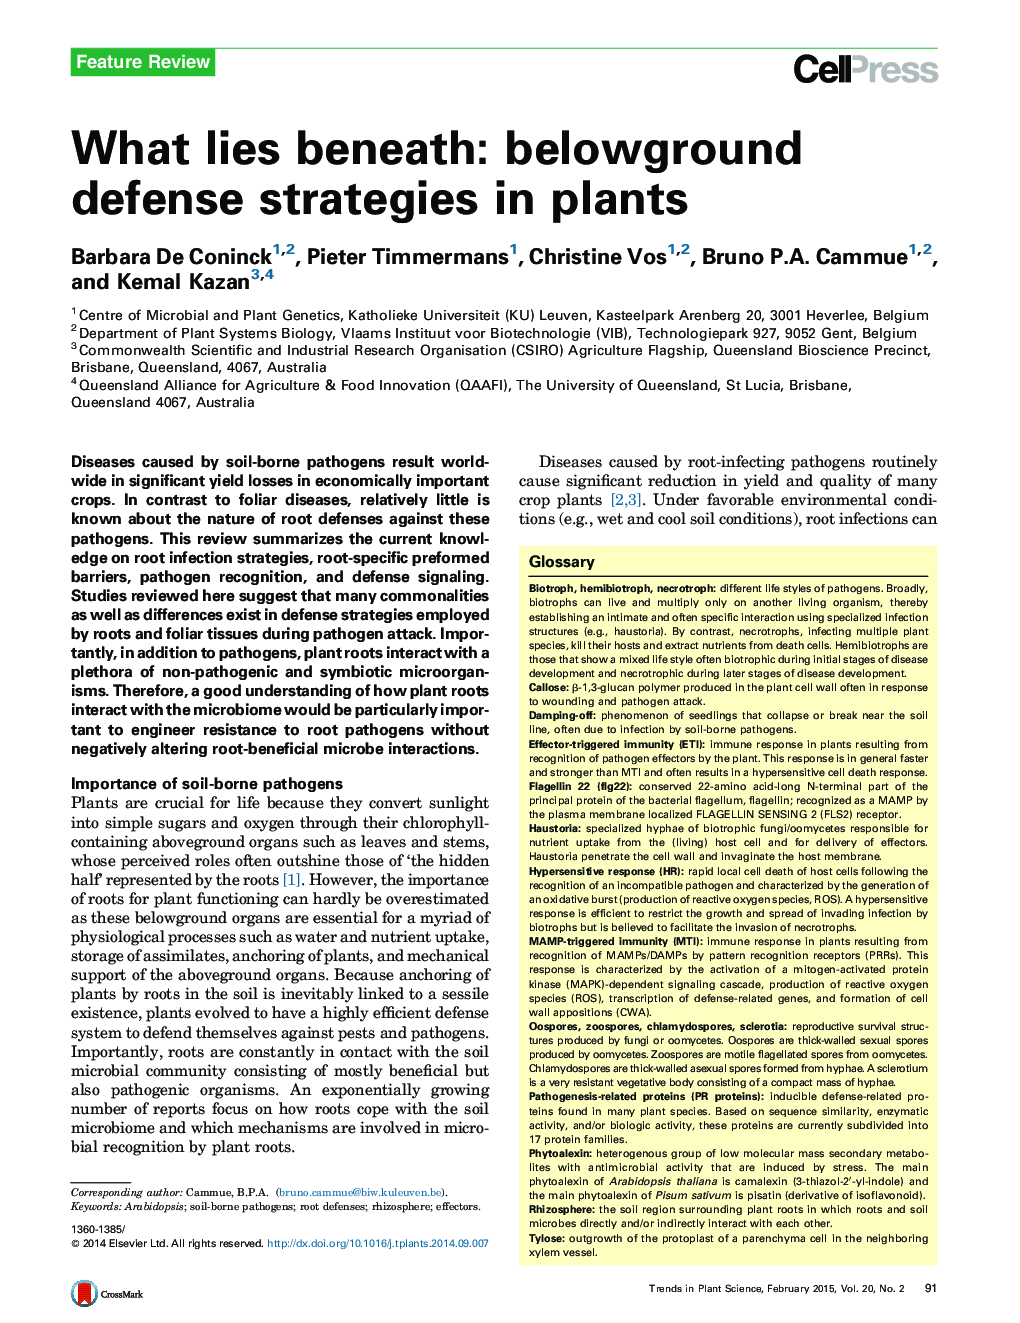 زیر چی: استراتژی دفاع زیر زمینی در گیاهان 